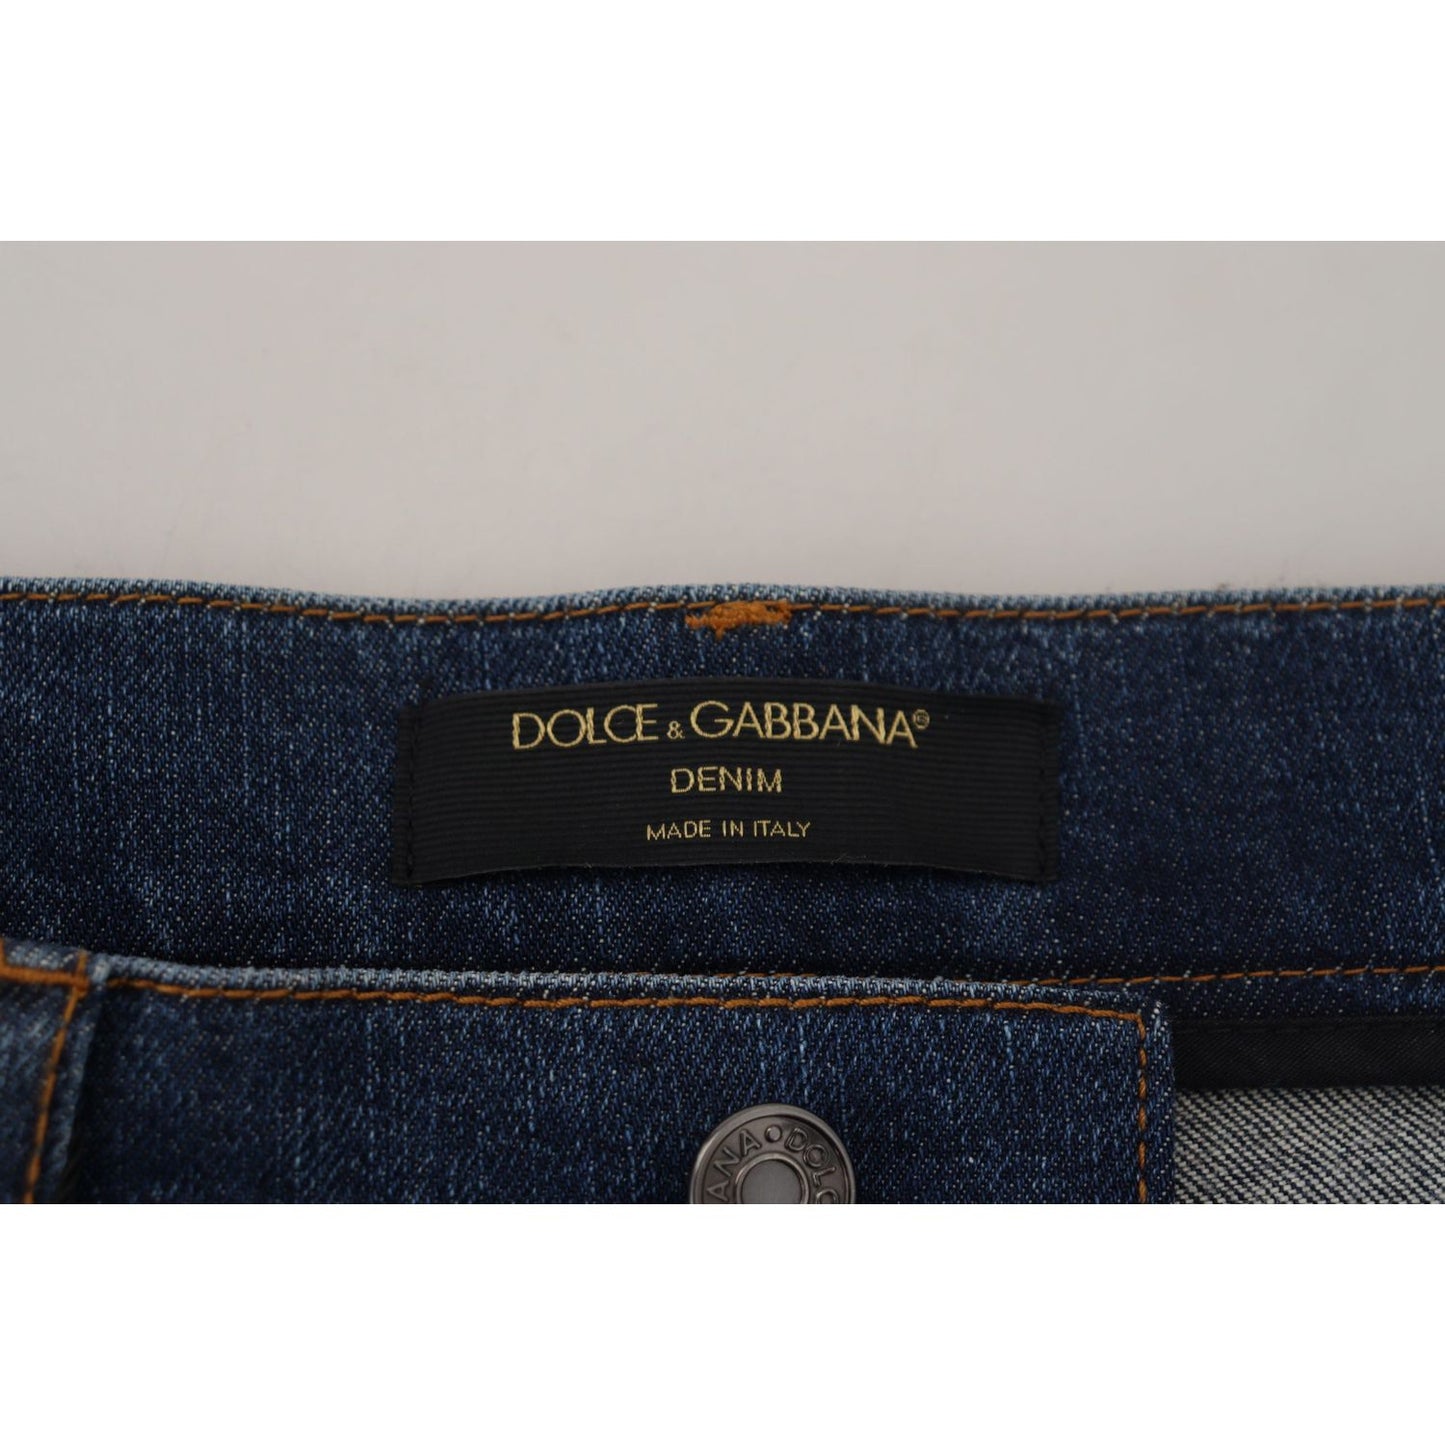 Dolce & Gabbana Elegant Floral Lace Front Denim Jeans & Pants black-floral-lace-front-skinny-denim-jeans